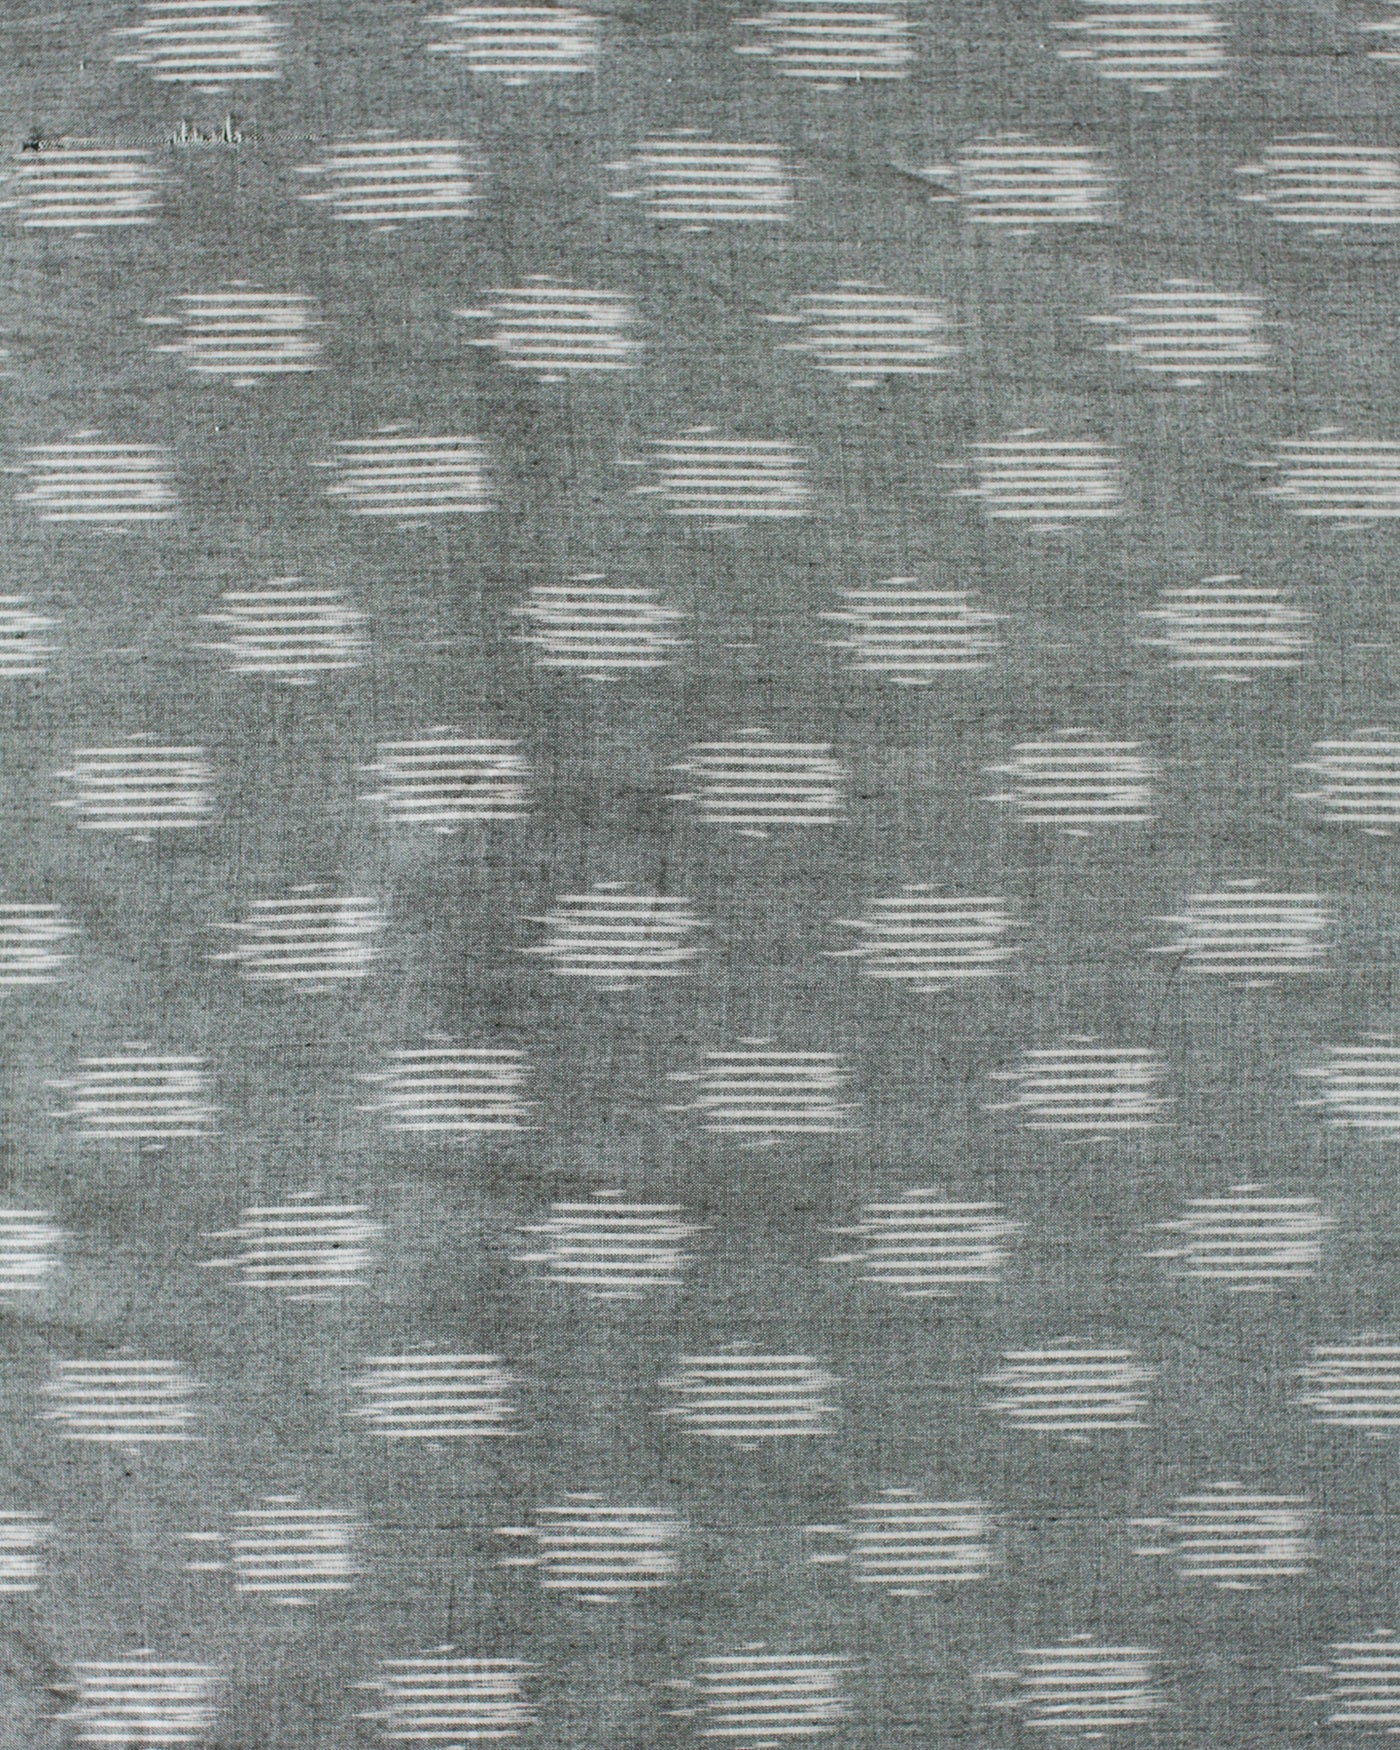 Handloom Ikat Fabric #008 - Glacier Gray